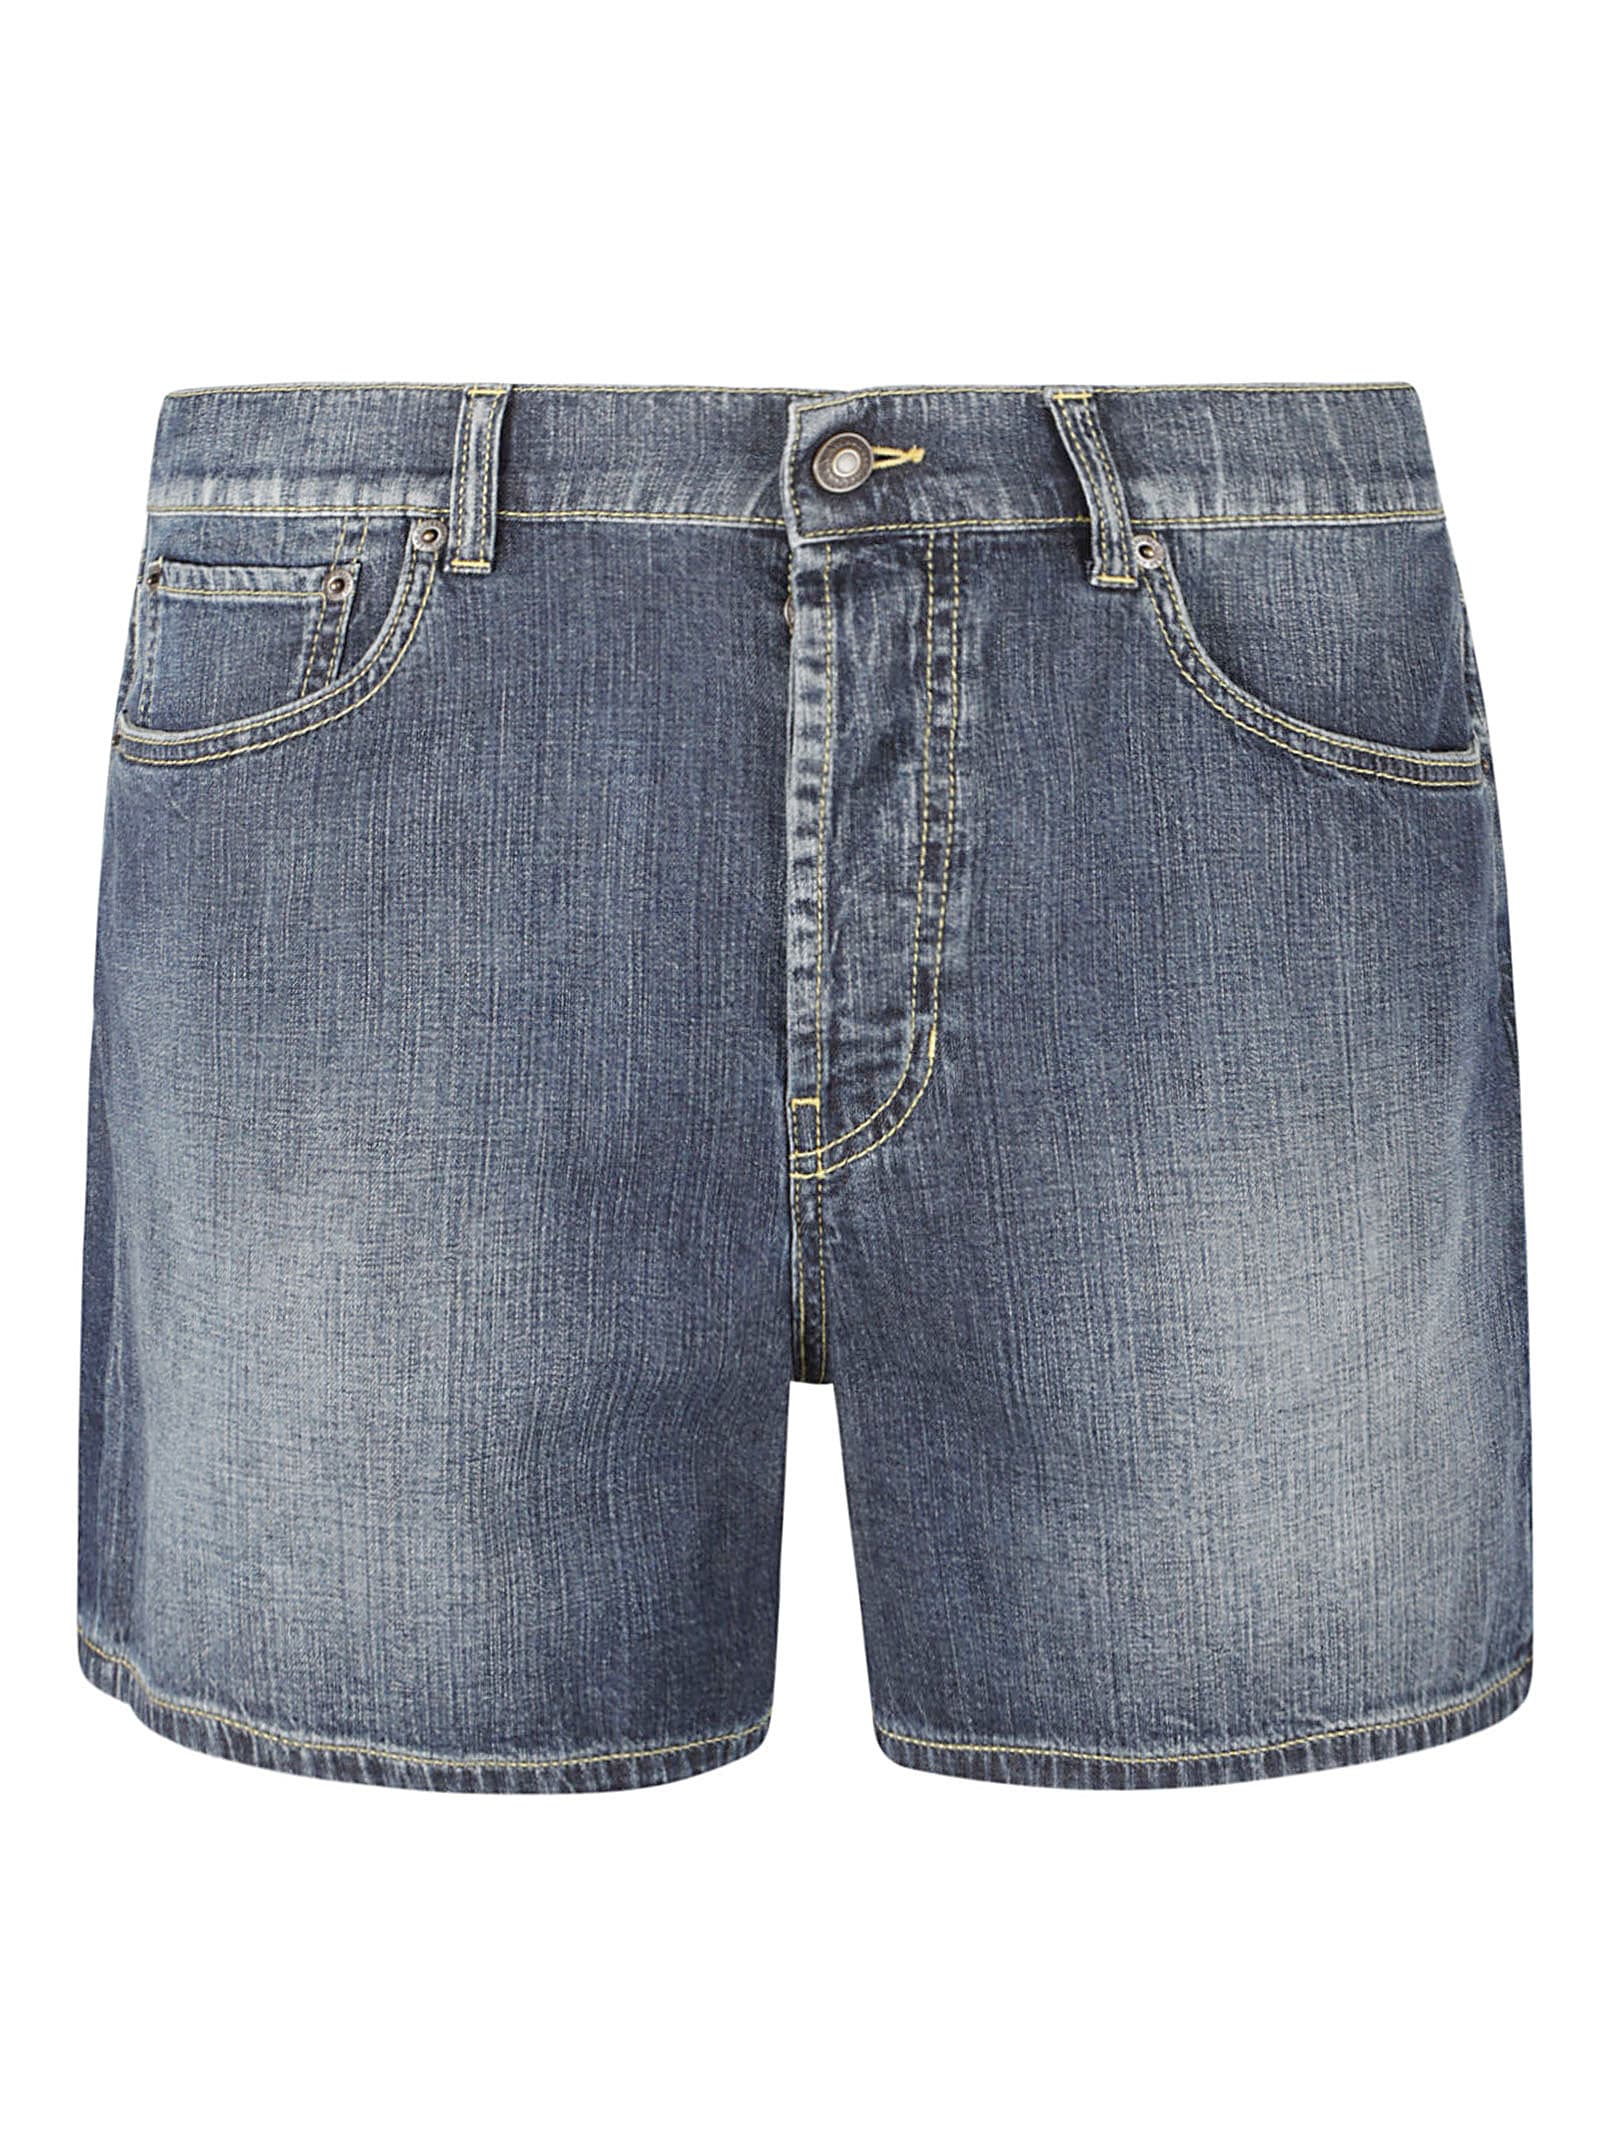 Alexander Mcqueen 5 Pockets Denim Shorts In Blue Washed